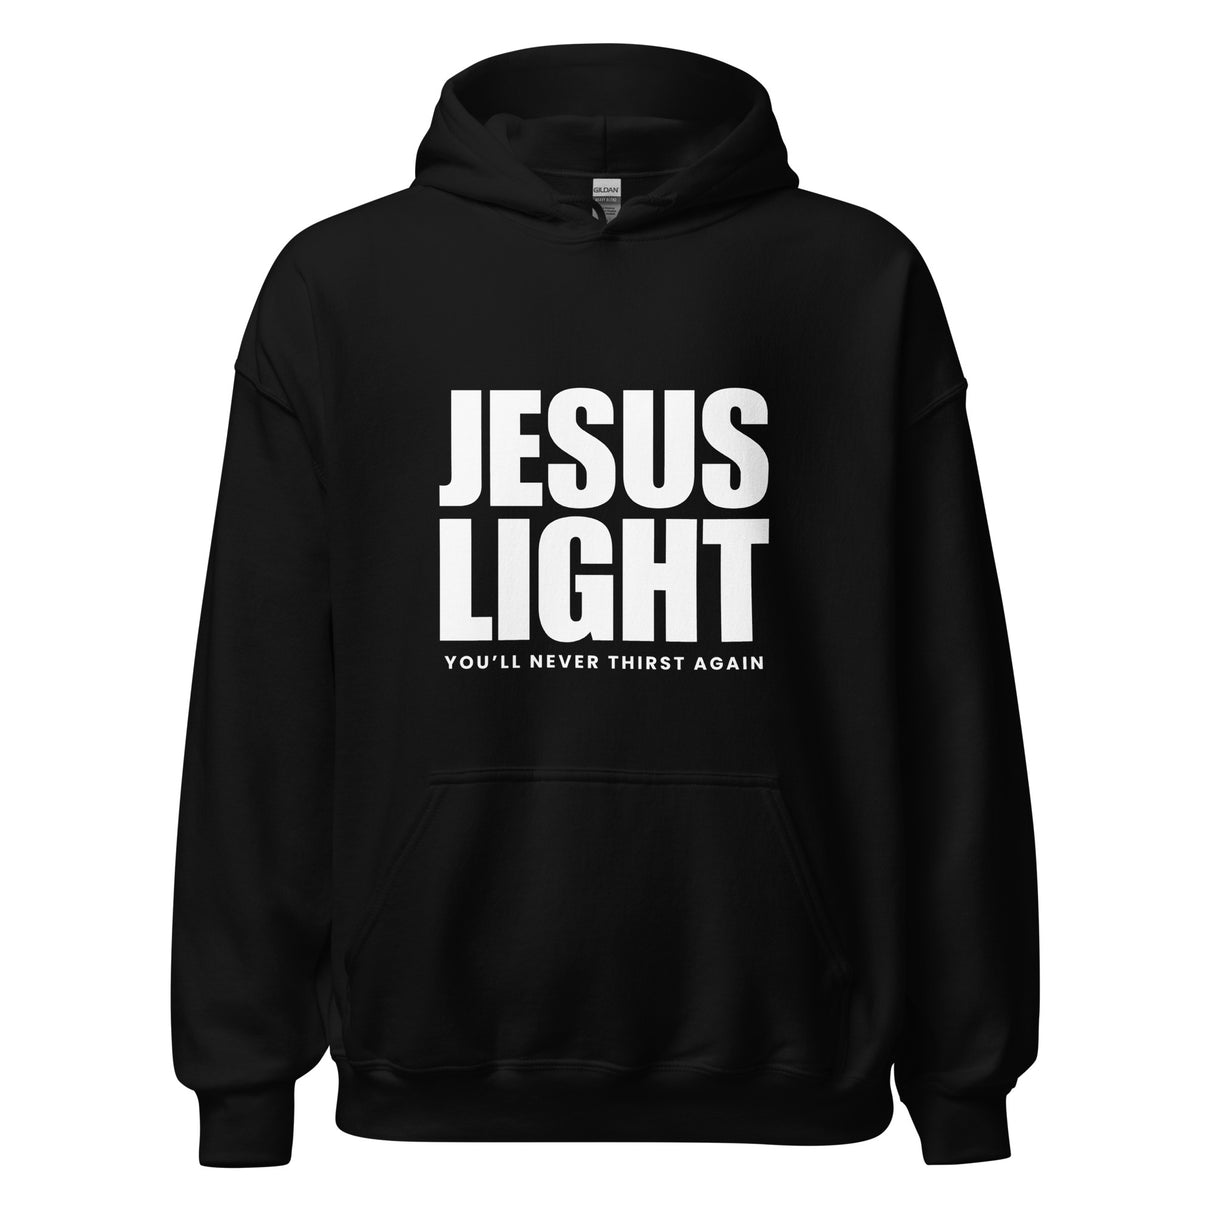 Jesus Light Pre-shrunk Hoodie